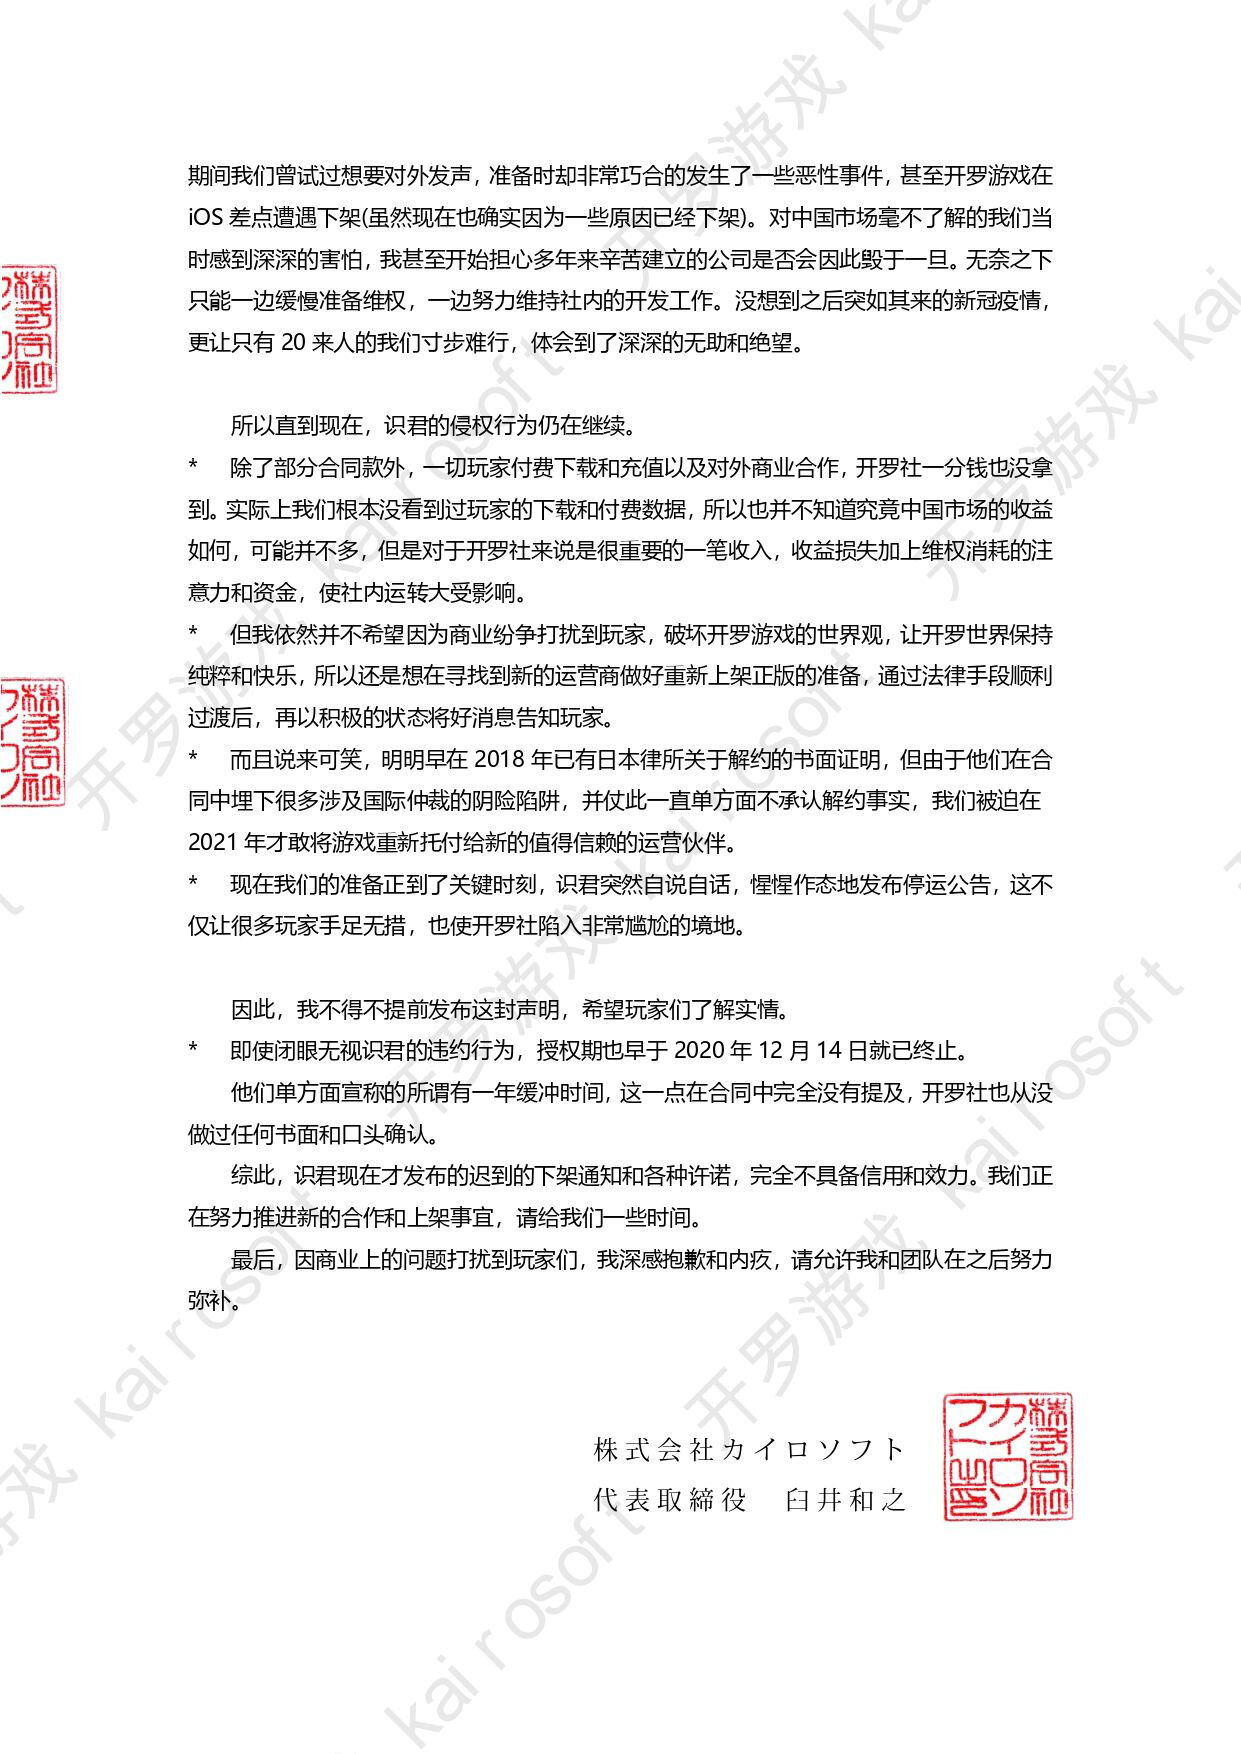 日本开罗游戏发表告玩家书，称“中国代理严重侵权”